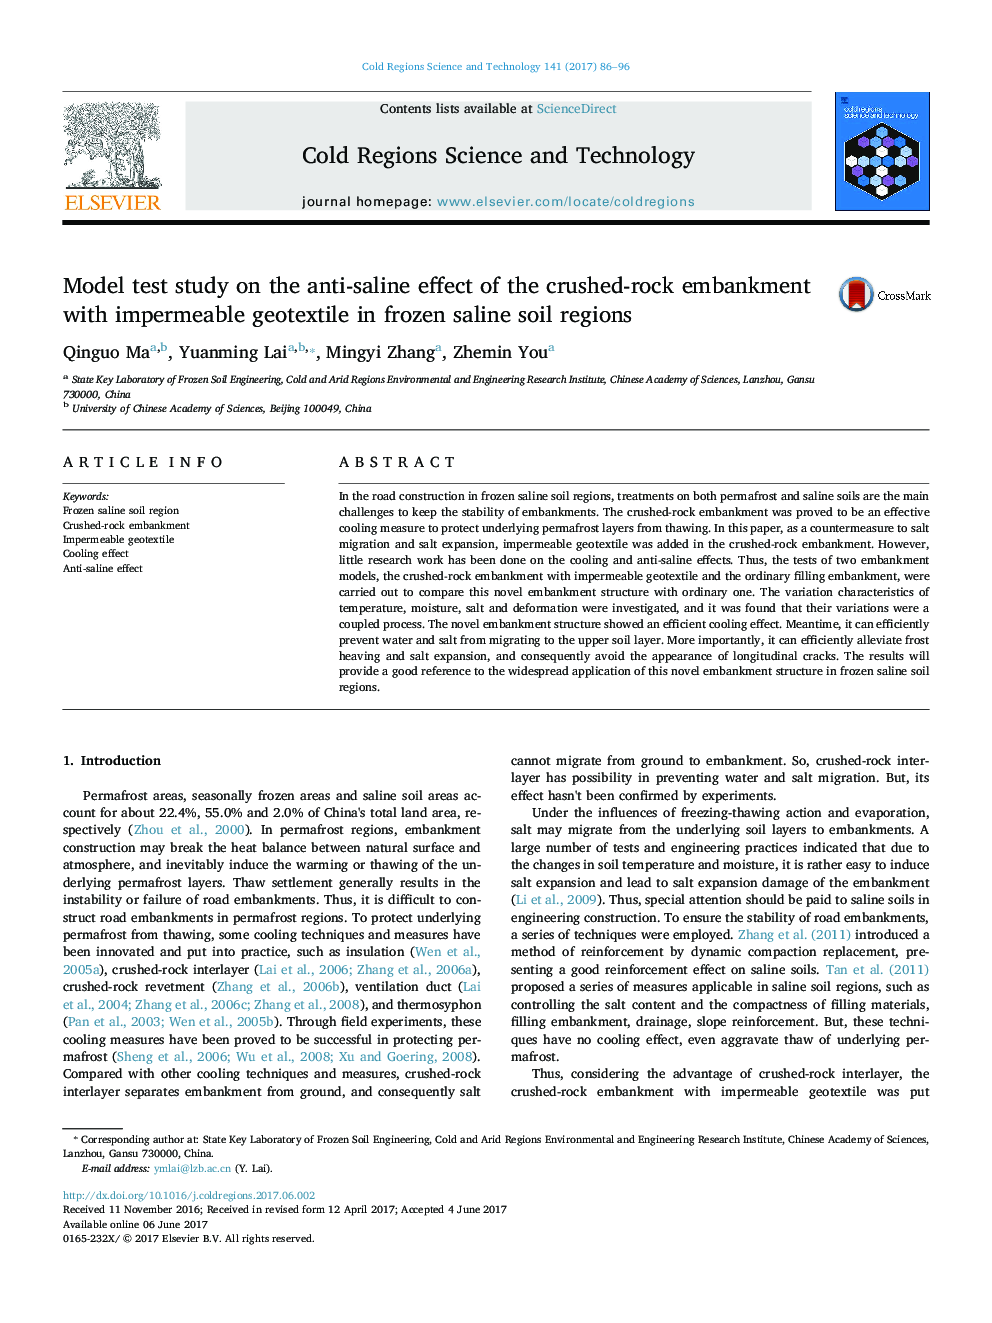 تحلیل مدل تحقیق بر اثر ضد شوره سنگی خرد شده سنگی با ژئوتکستیل غیر قابل نفوذ در مناطق خاک شوری منجمد